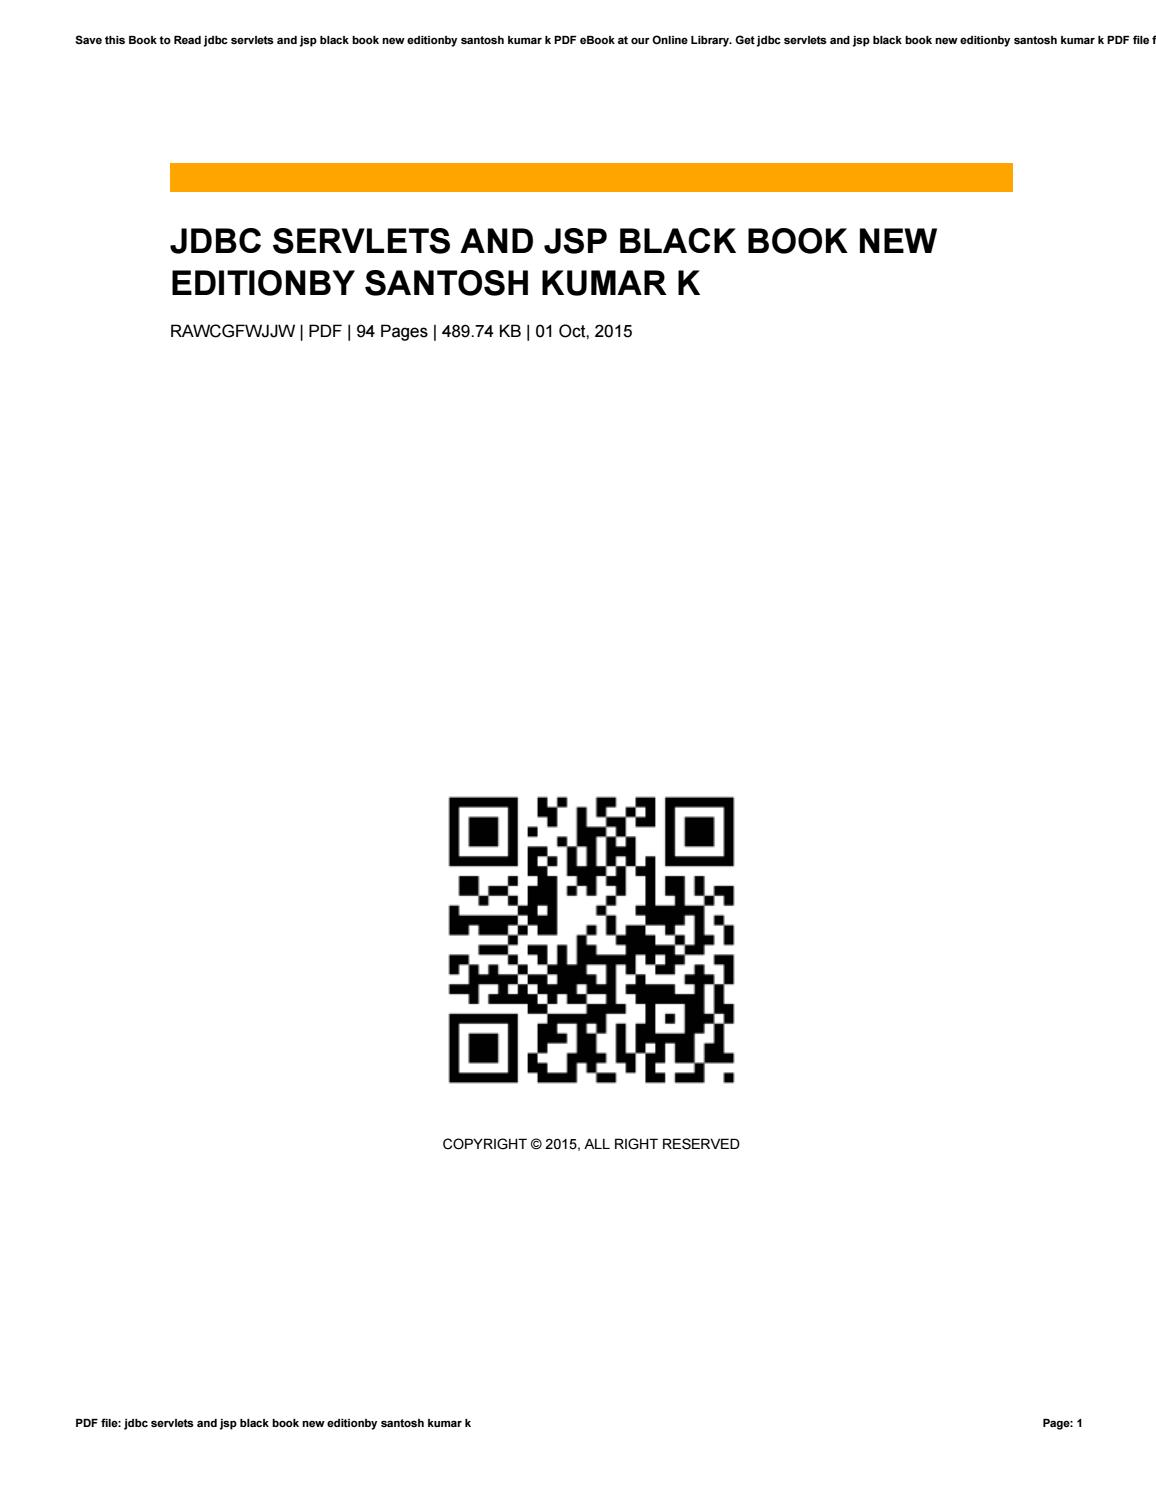 Jdbc, Servlets, And Jsp Black Book, New Edition Pdf